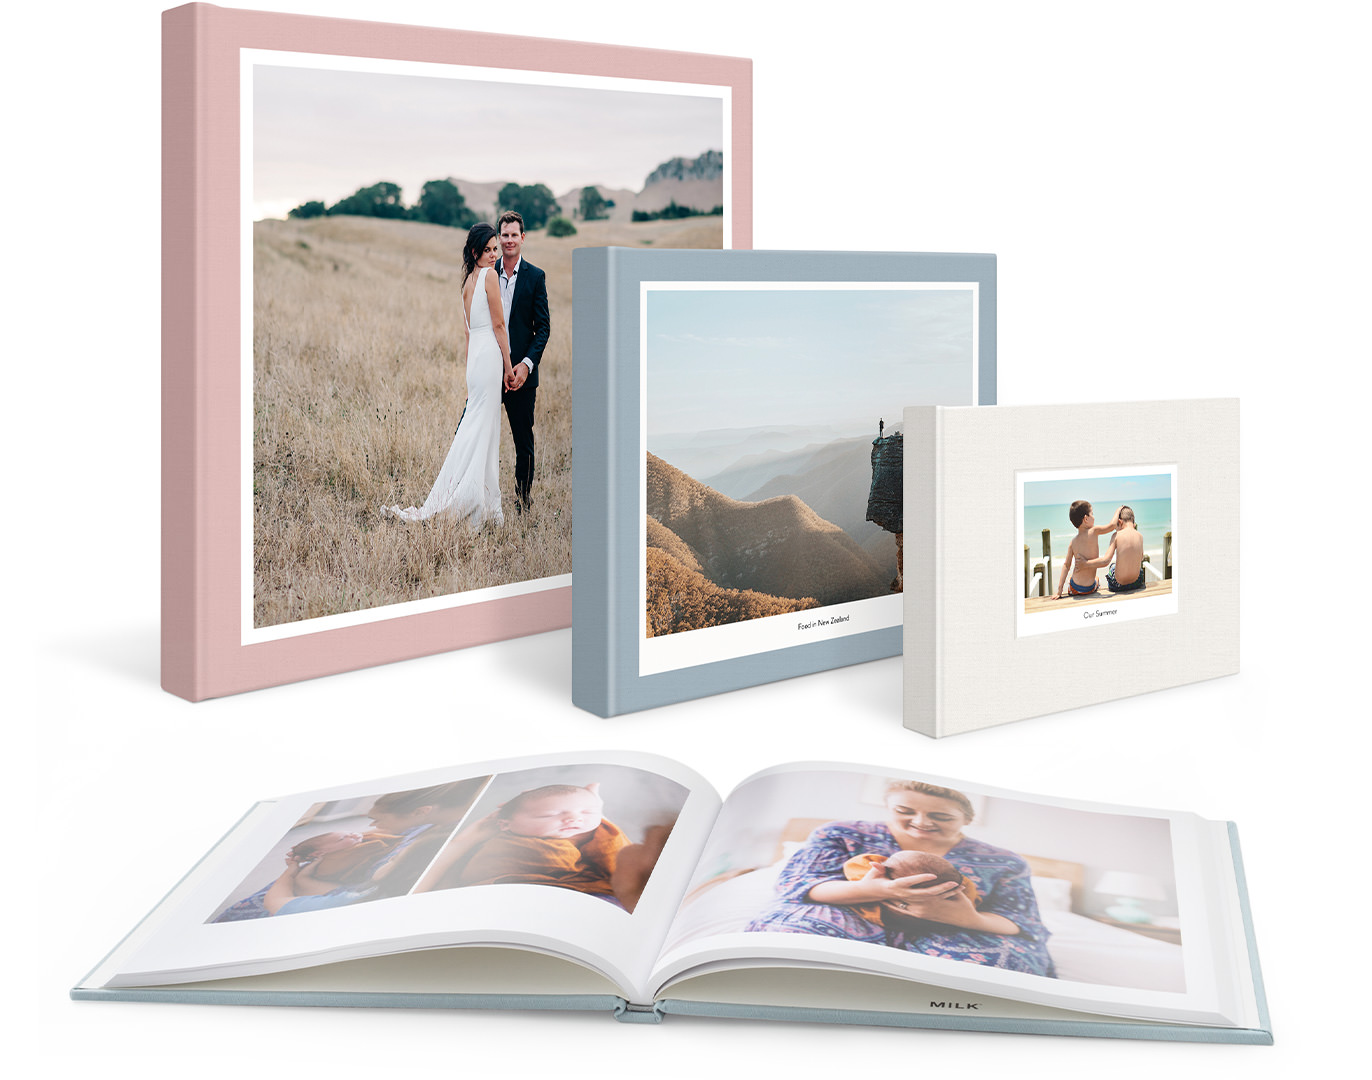 Quatre livres photo classiques, un livre de mariage, un livre de voyage, un livre de famille et un livre dépliable pour les photos de bébé.